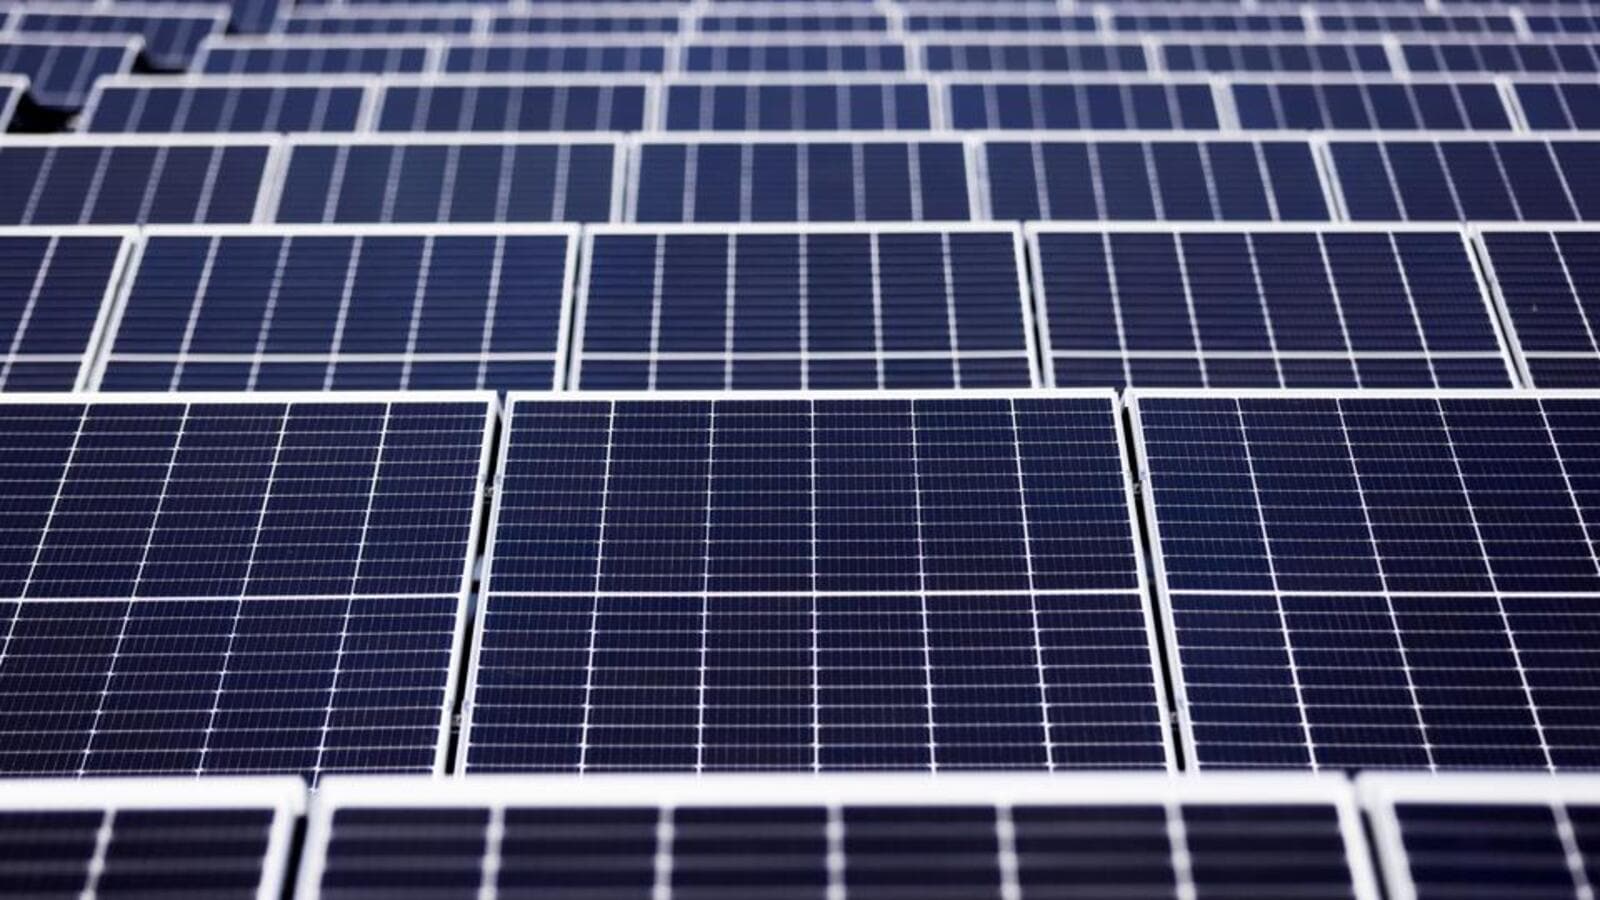 खुली पहुंच व्यवस्था के तहत सौर ऊर्जा क्षमता जनवरी-जून में 97 प्रतिशत बढ़ी: रिपोर्ट